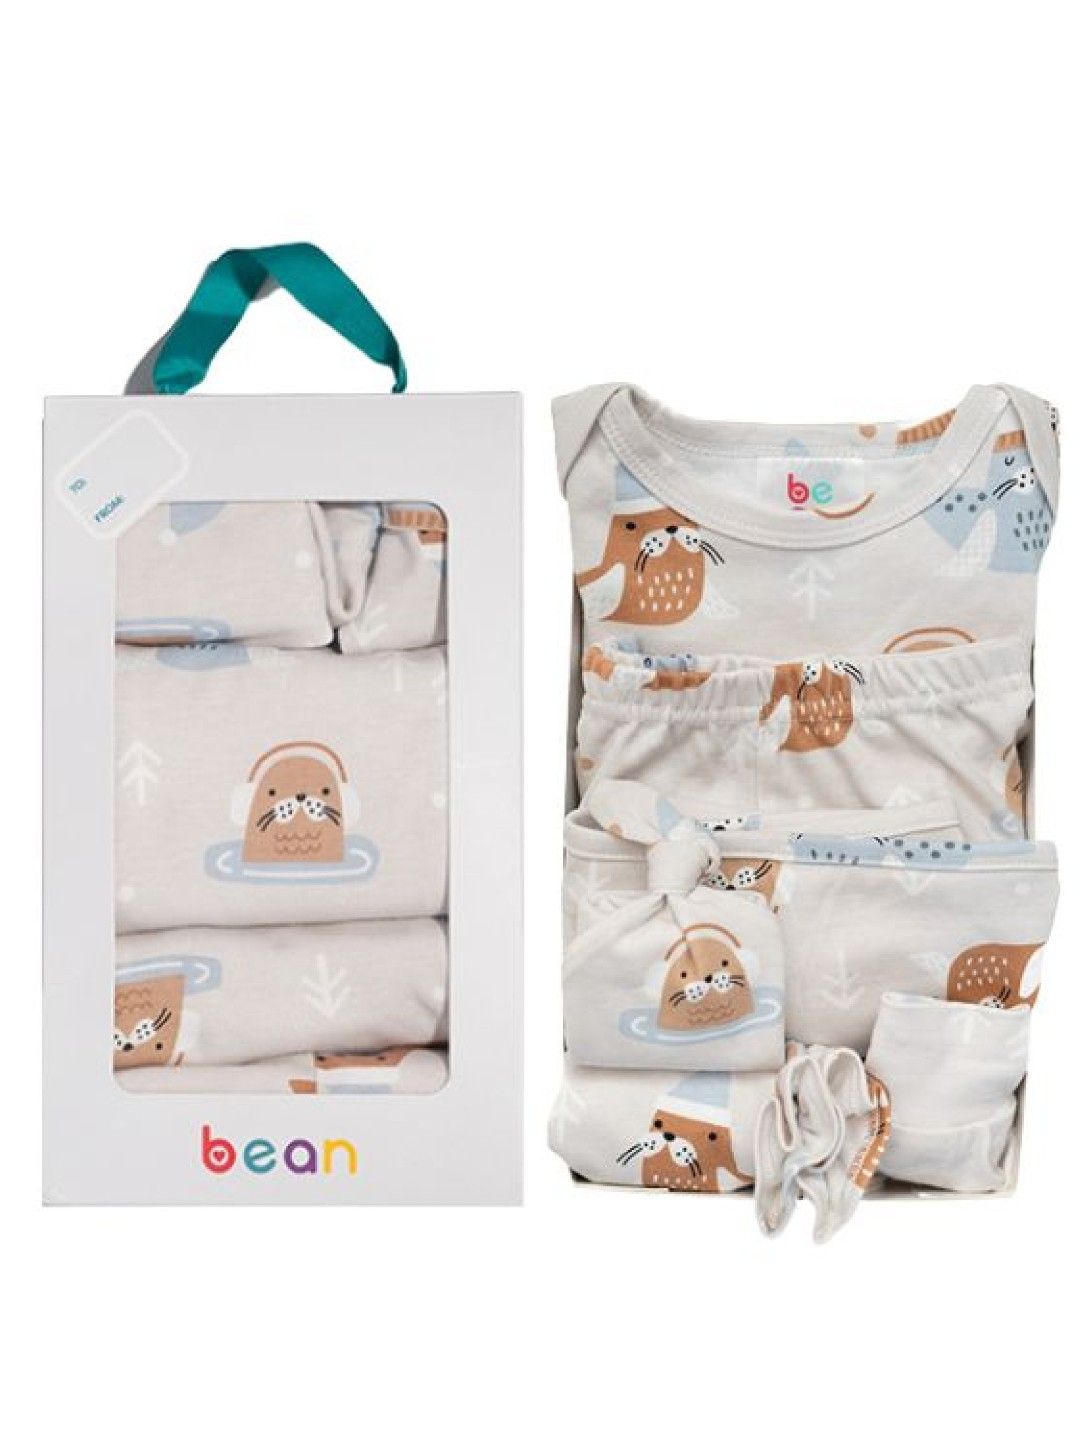 bean fashion Seal 7PCS Newborn Baby Starter Gift Set (Seal- Image 3)